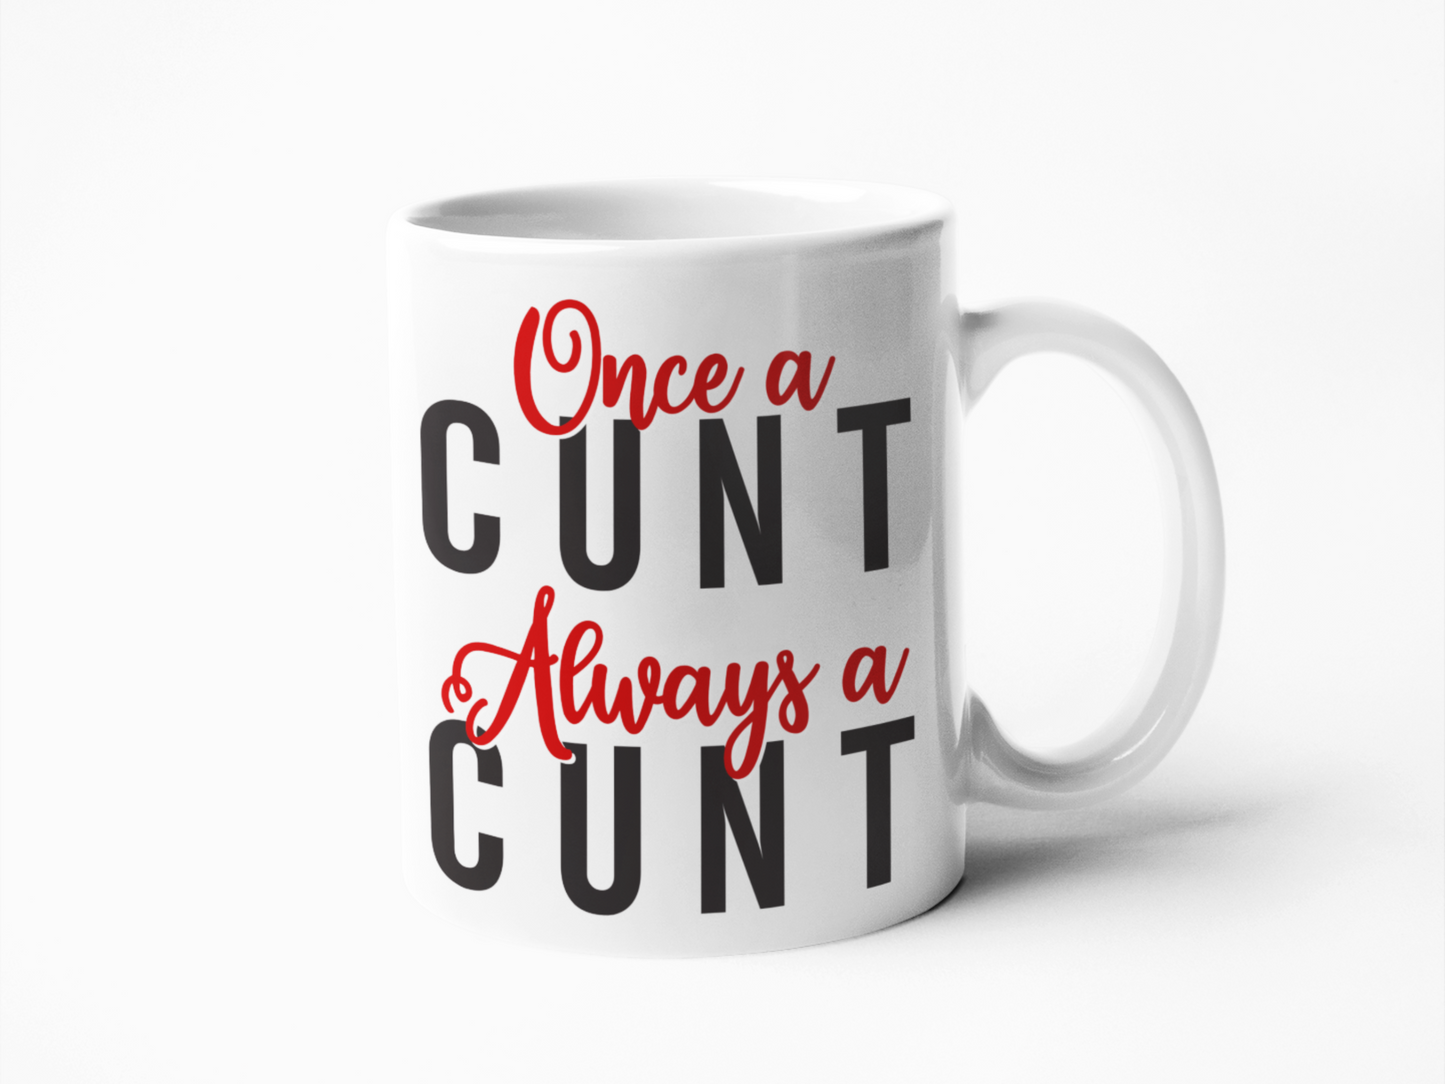 Once a cunt always a cunt funny coffee mug